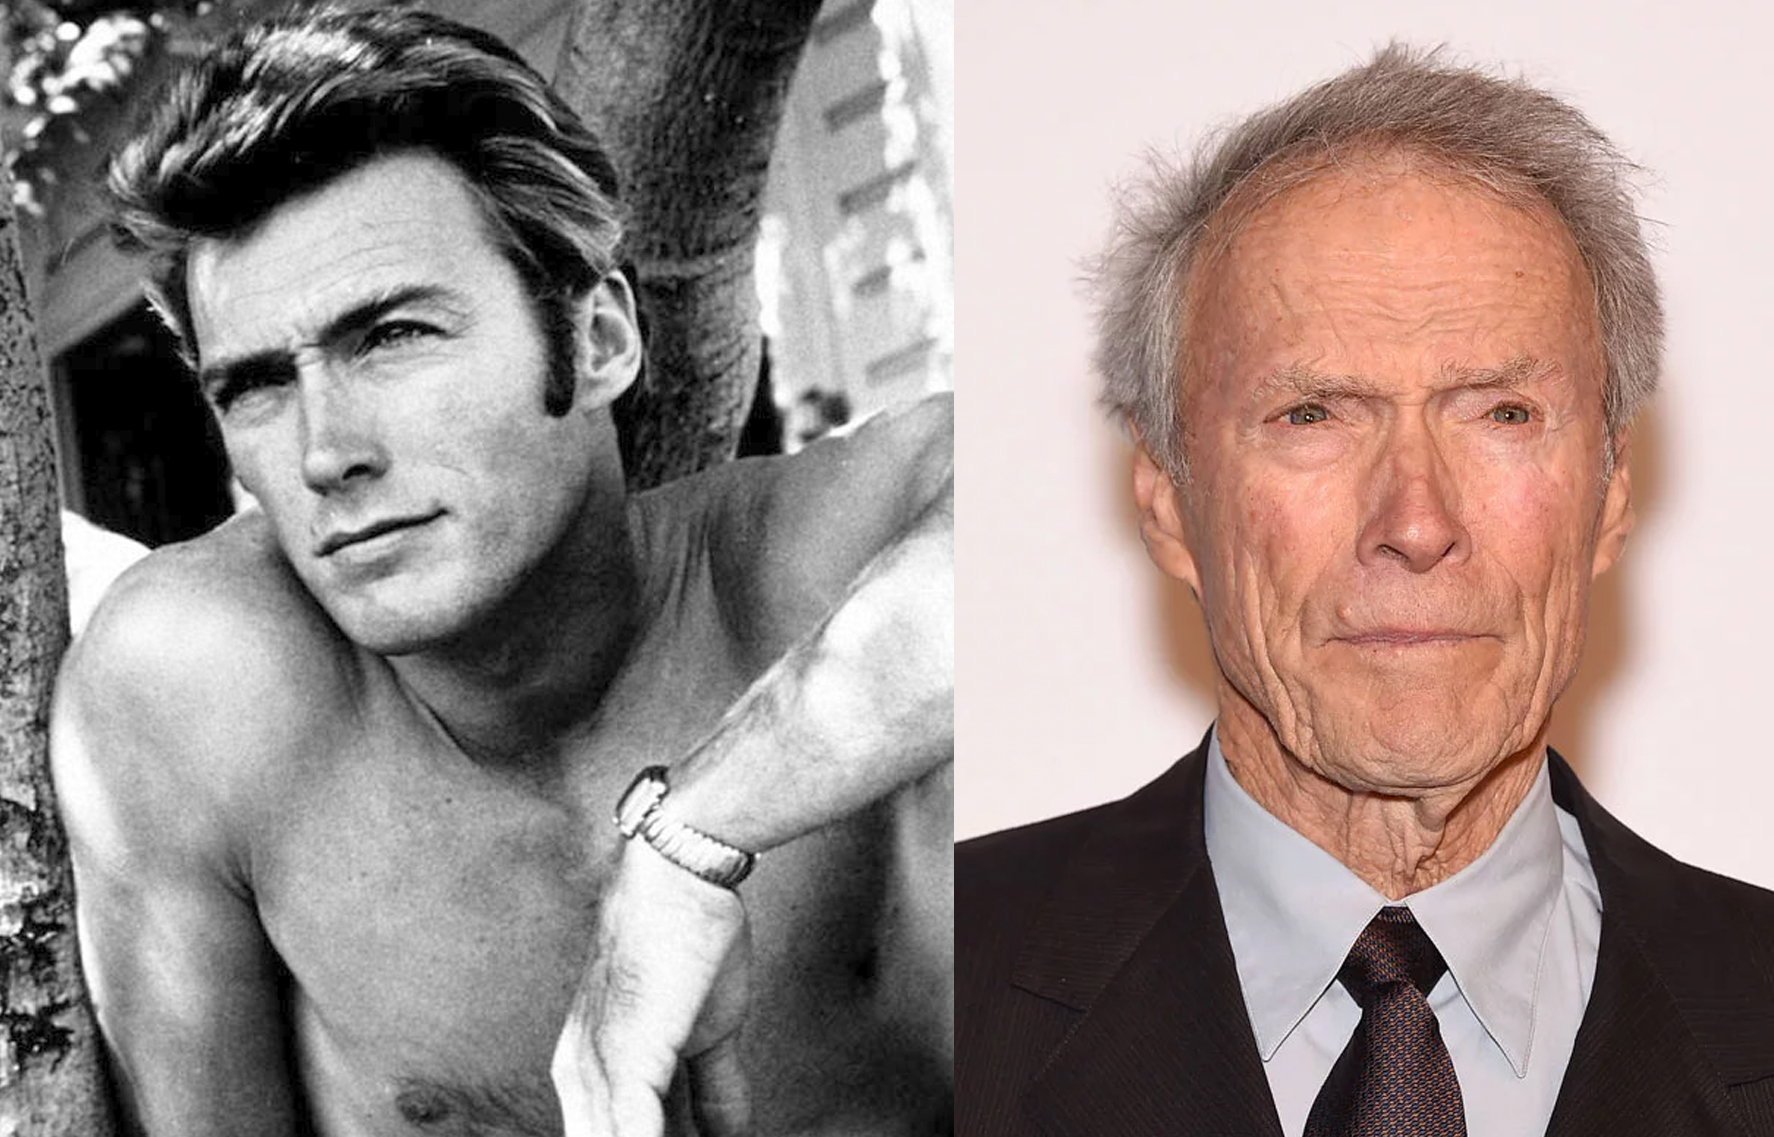 Clint Eastwood y los otros 11 actores más longevos de Hollywood